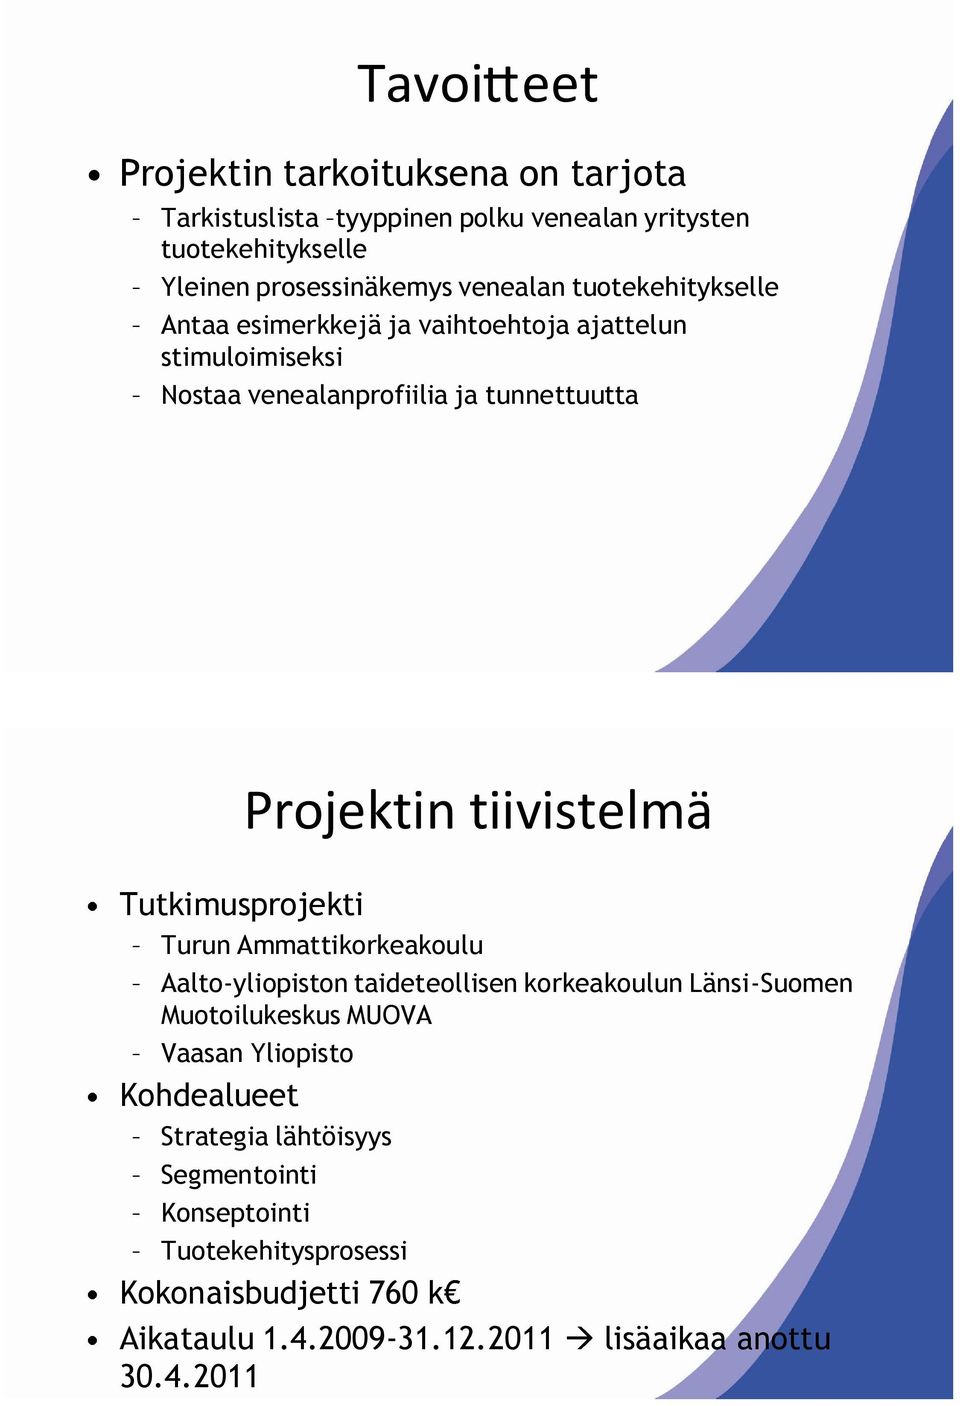 Tutkimusprojekti Turun Ammattikorkeakoulu Aalto-yliopiston taideteollisen korkeakoulun Länsi-Suomen Muotoilukeskus MUOVA Vaasan Yliopisto